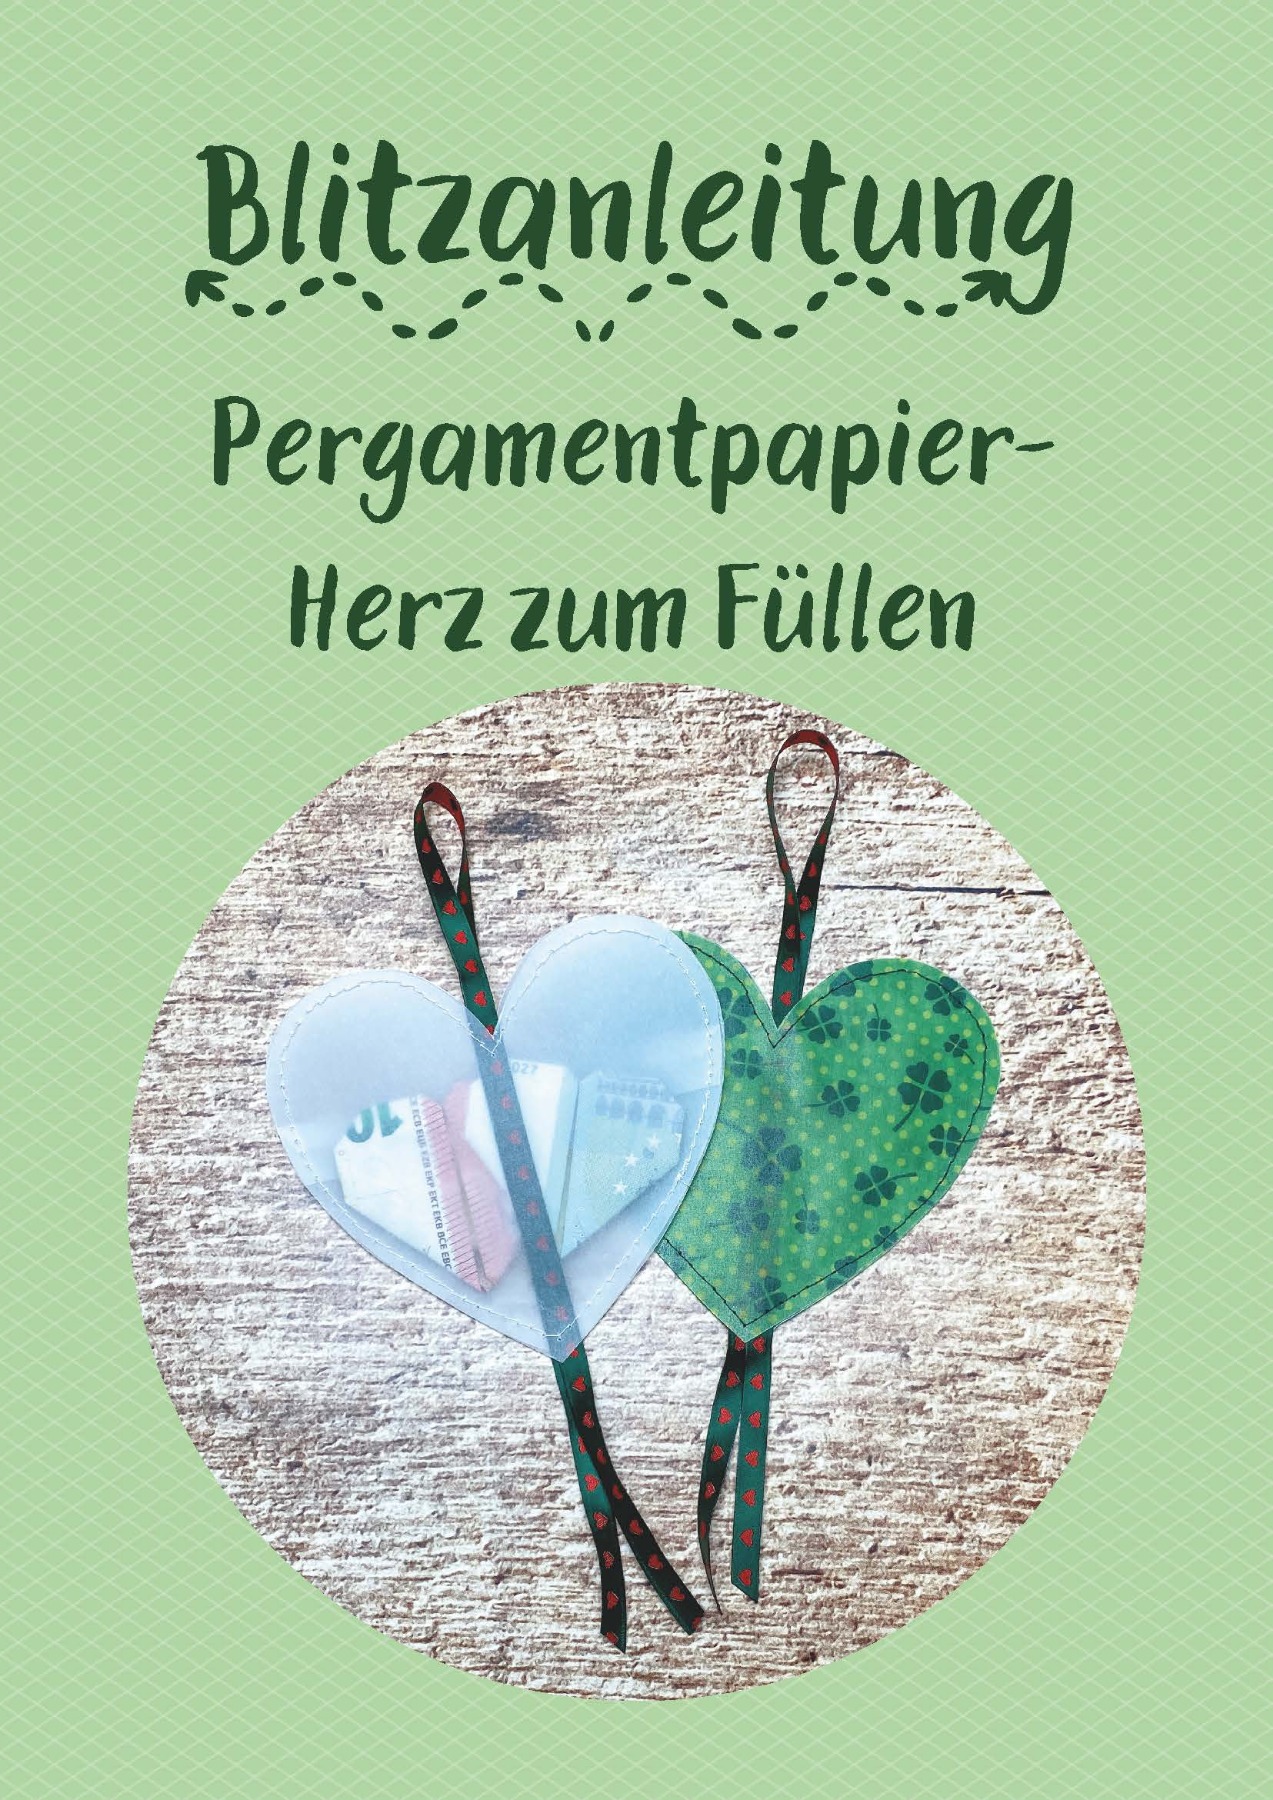 Blitzanleitung - Pergamentpapier-Herzen zum Füllen, Anleitung als Download 2